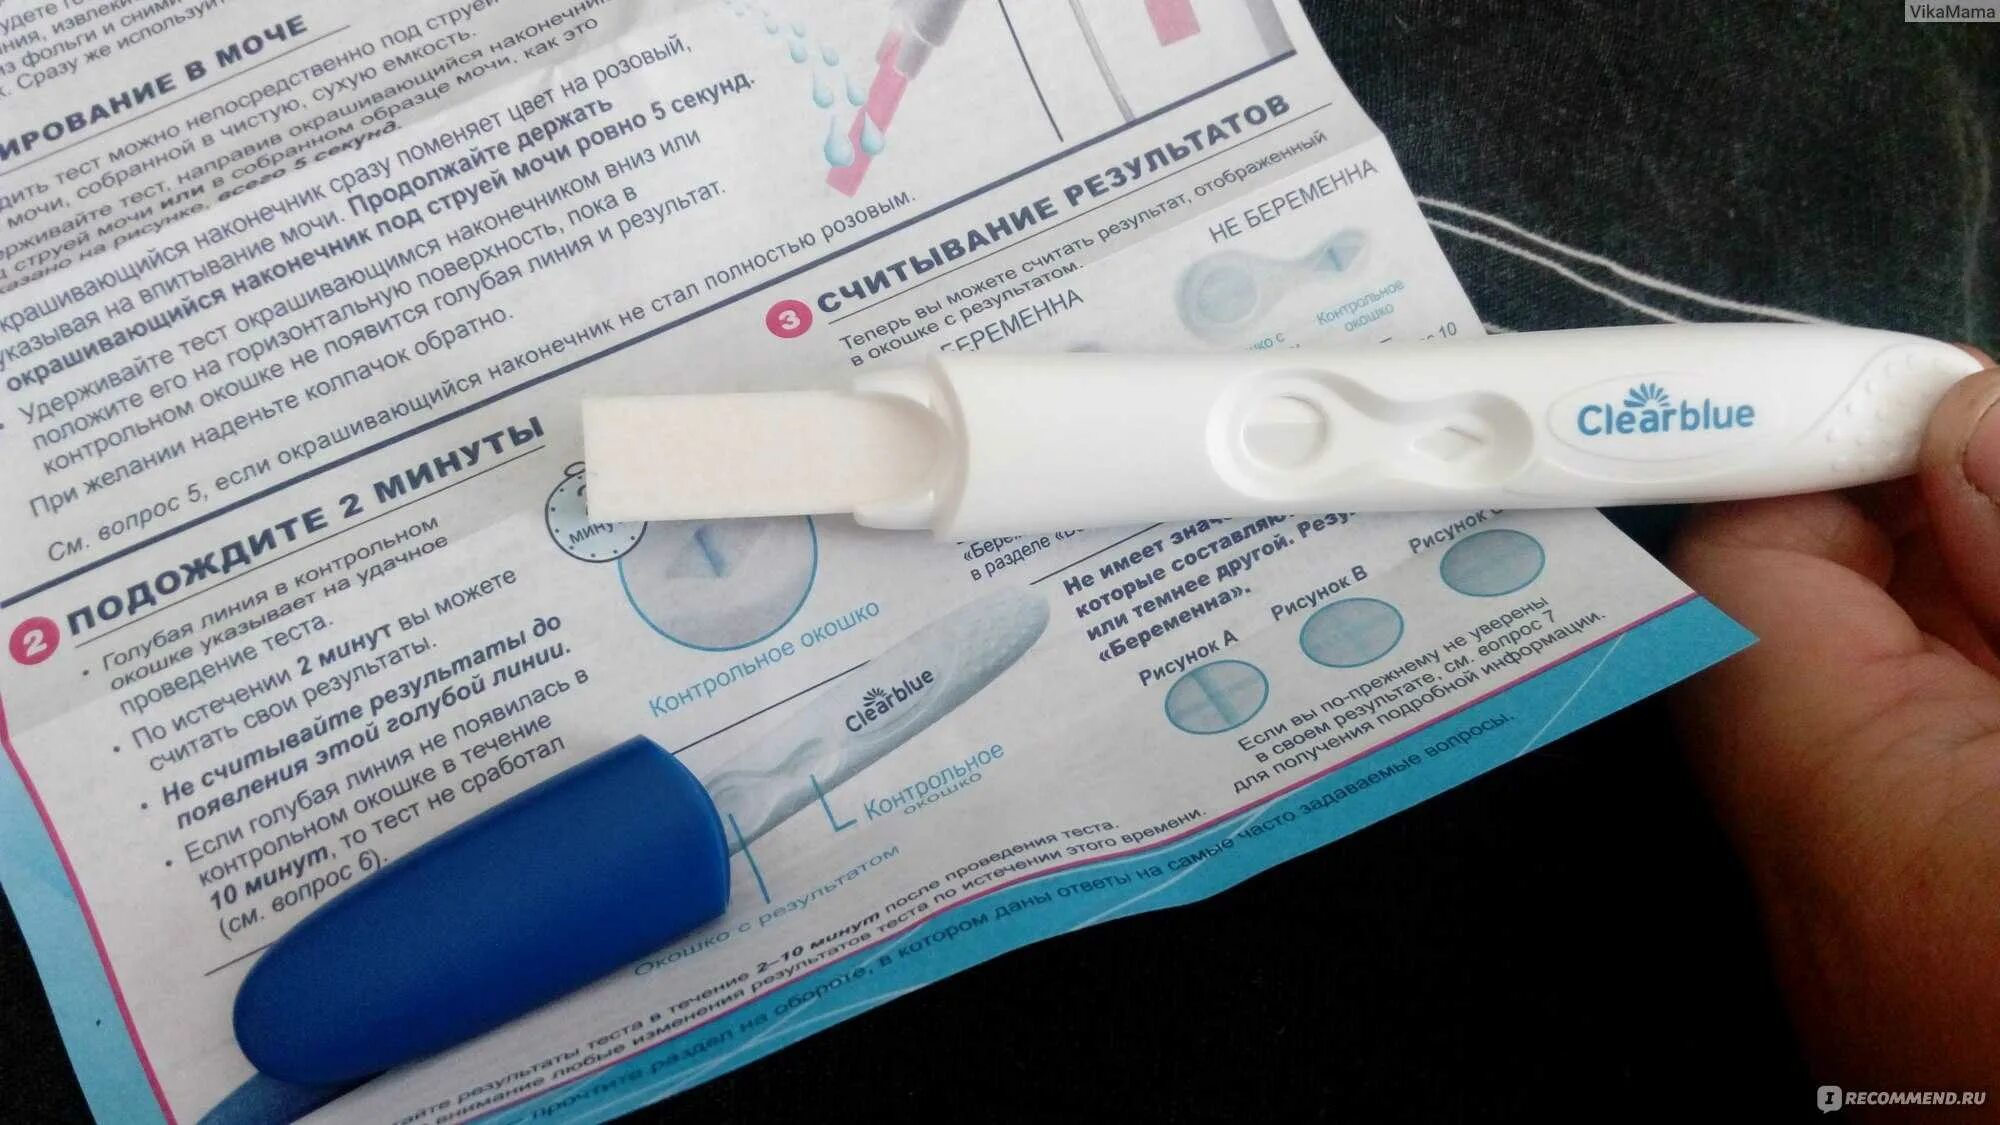 Струйный тест на беременность Clearblue. Струйный тест. Положительный струйный тест на беременность. Результаты теста на беременность Clearblue.